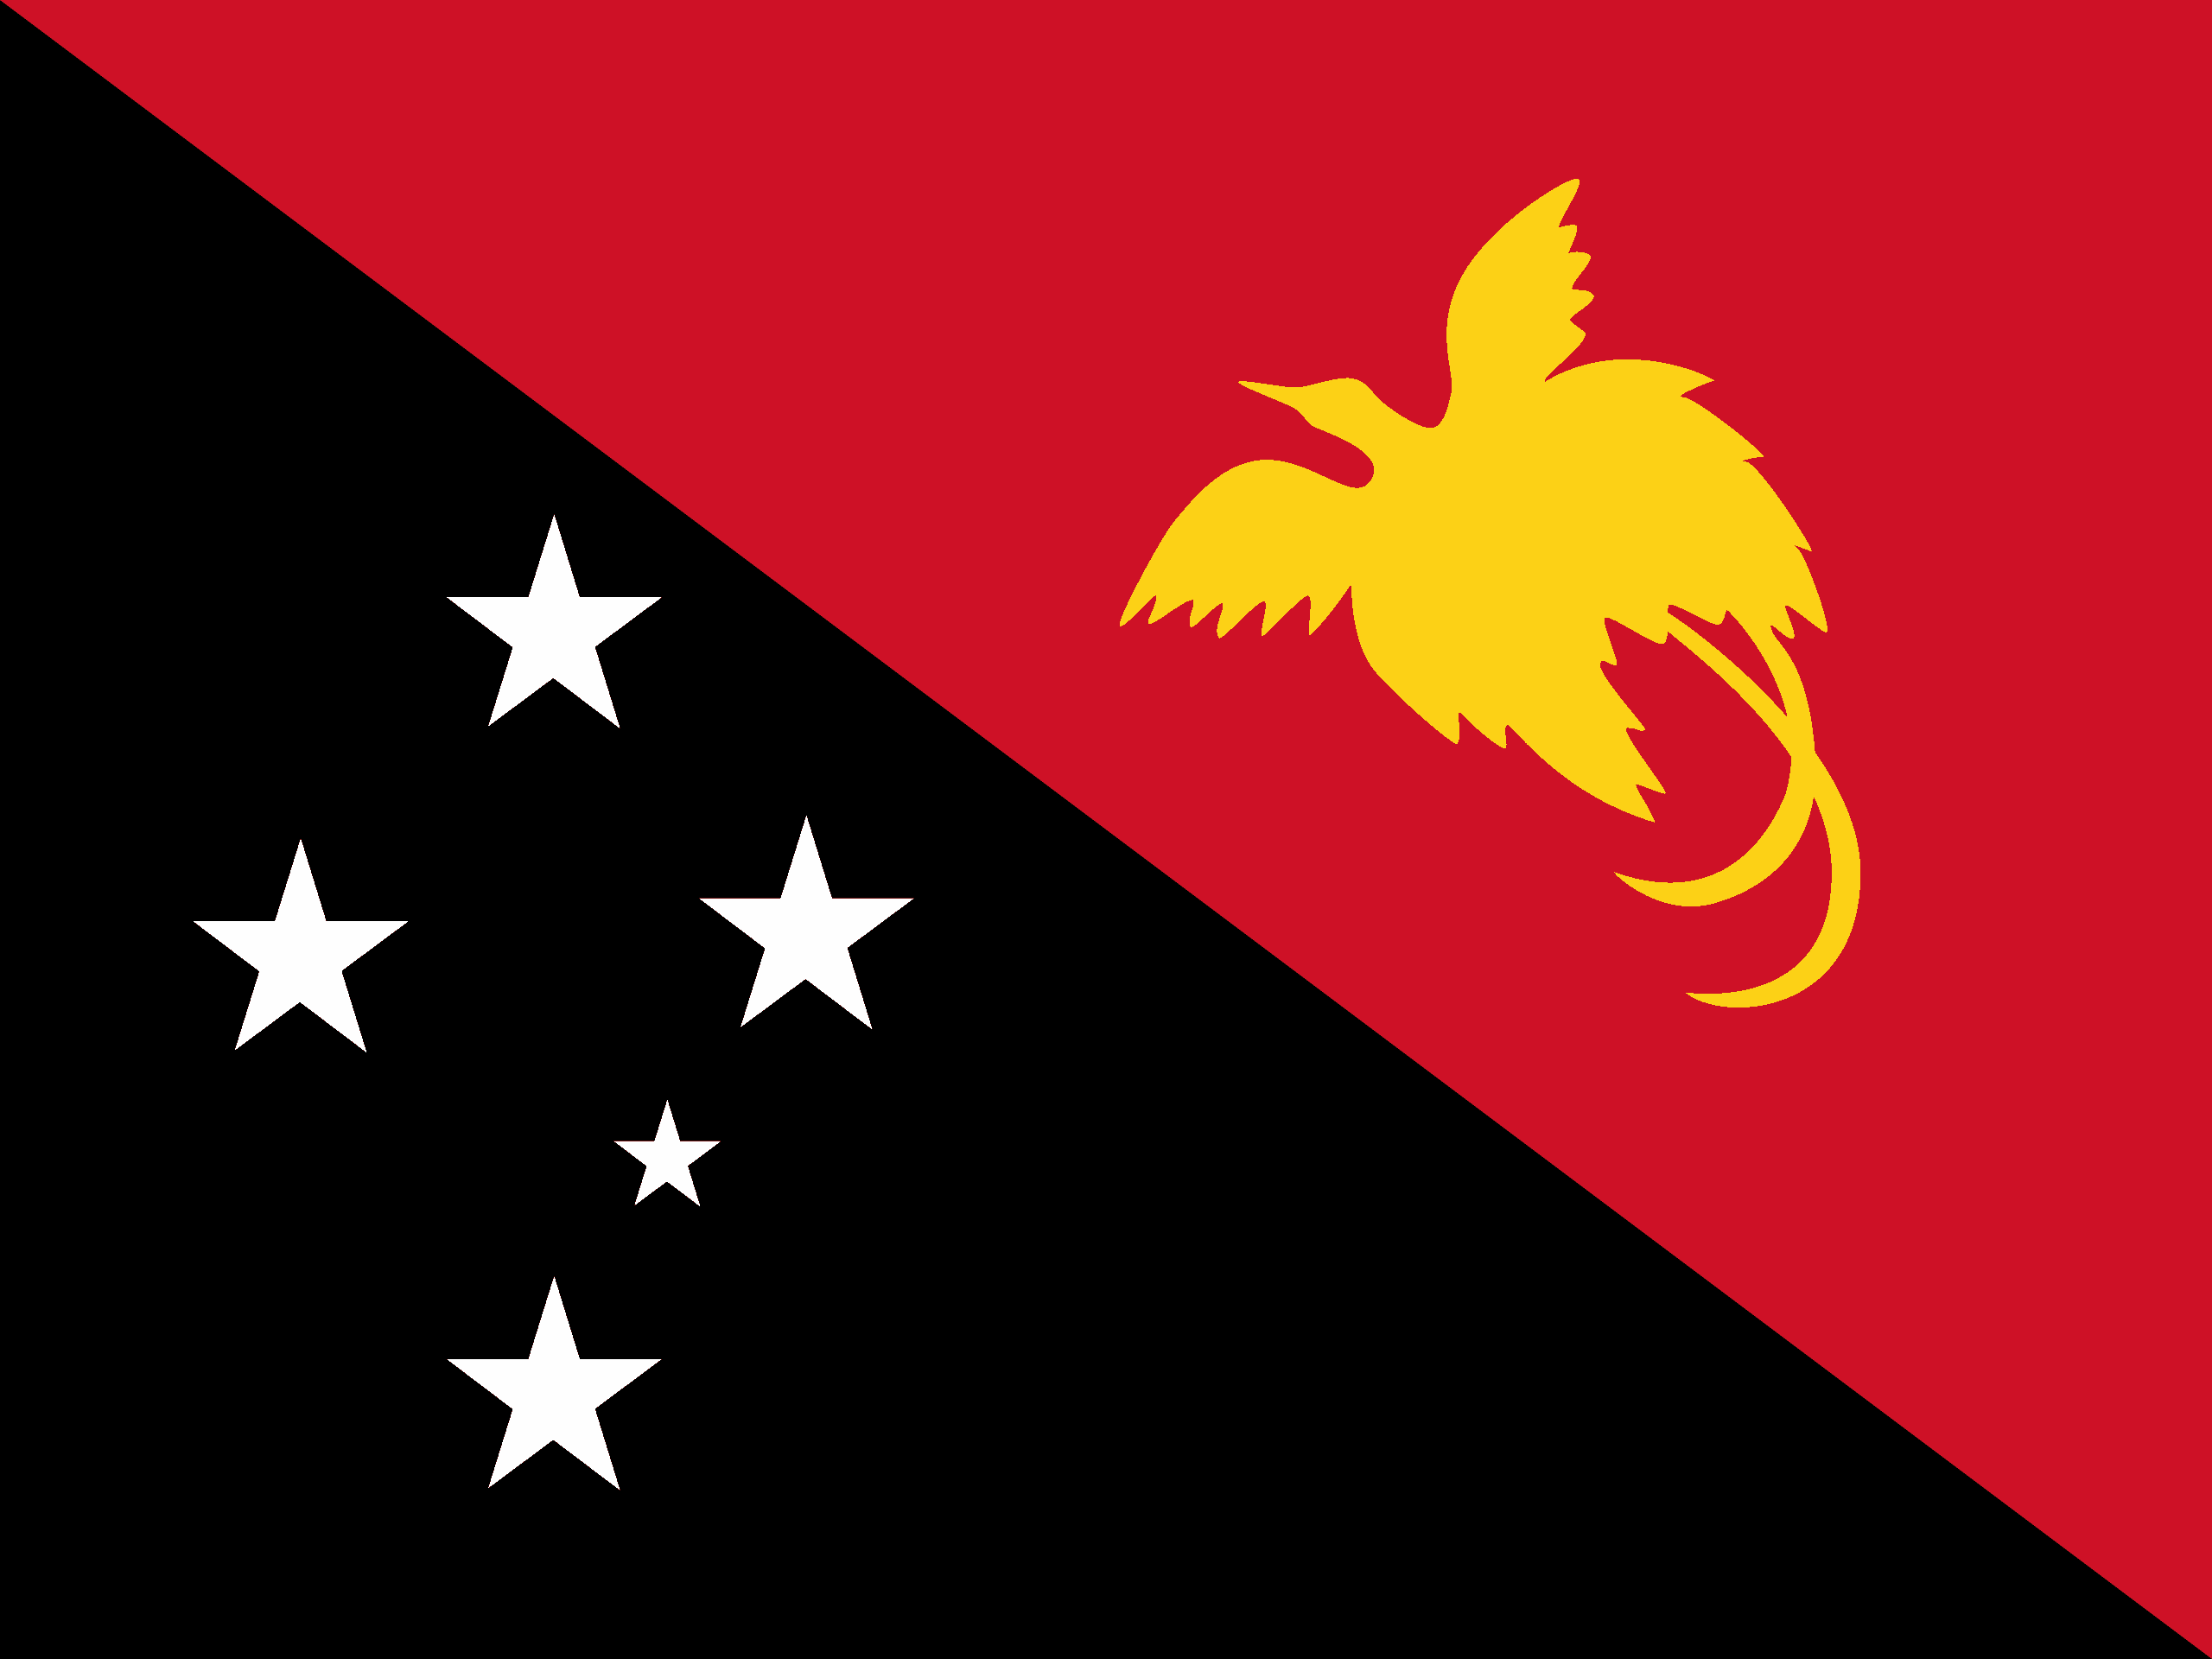 Papua New Guinea Flag - Papua New Guinea Drone Laws